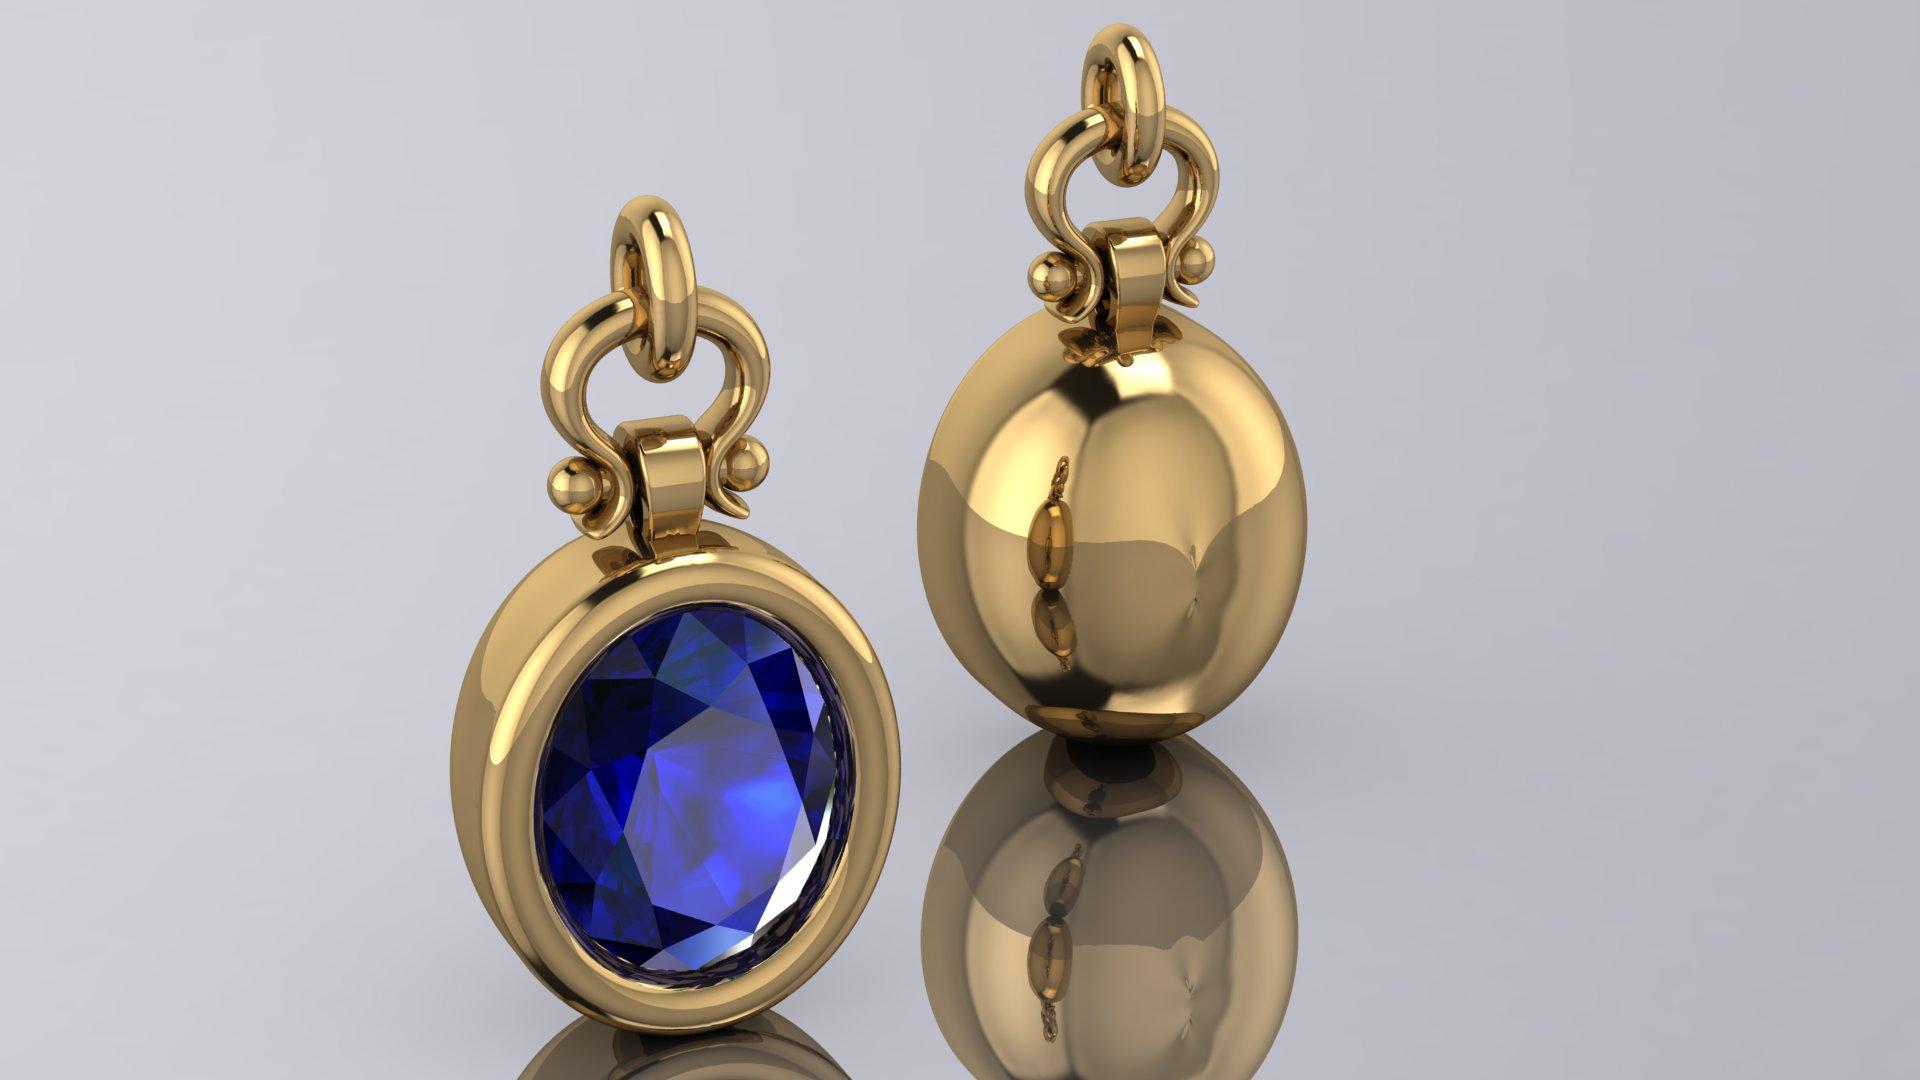 Oval Cut Berberyn Certified 3.89 Carat Oval Blue Sapphire Custom Pendant Necklace in 18k For Sale